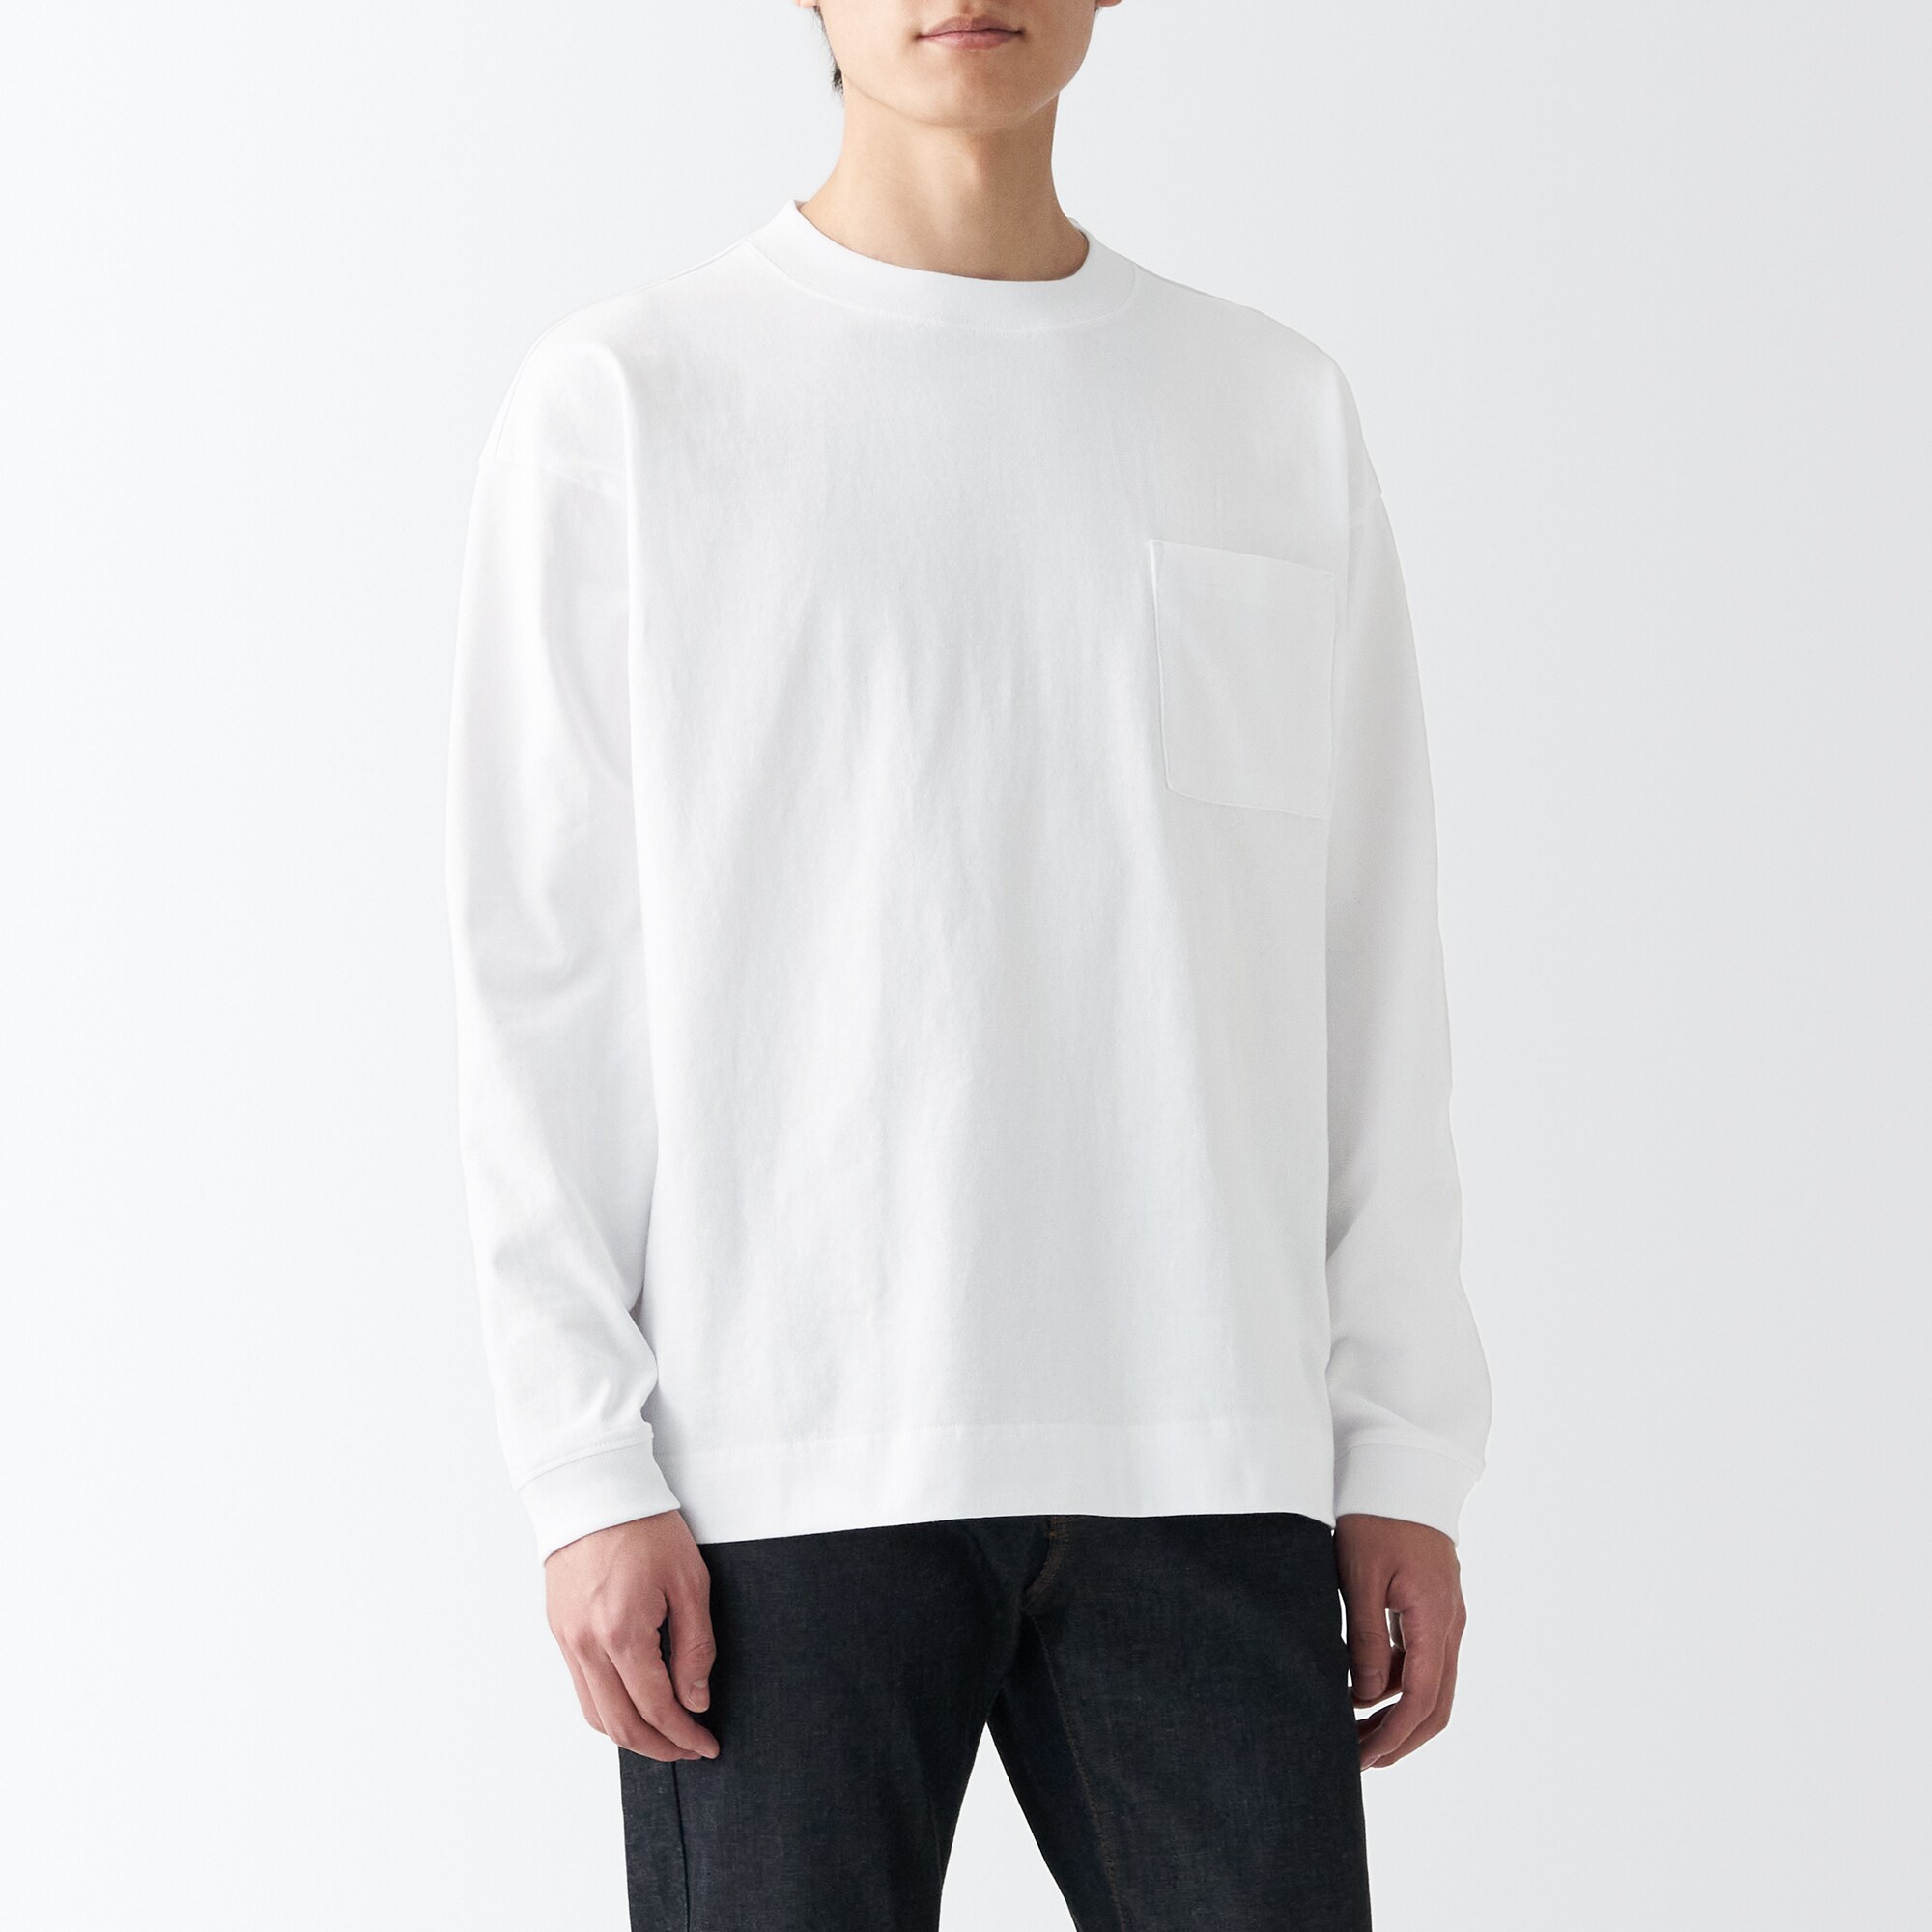 무인양품 일본 저지 남성 스웨트 셔츠 포켓 티셔츠